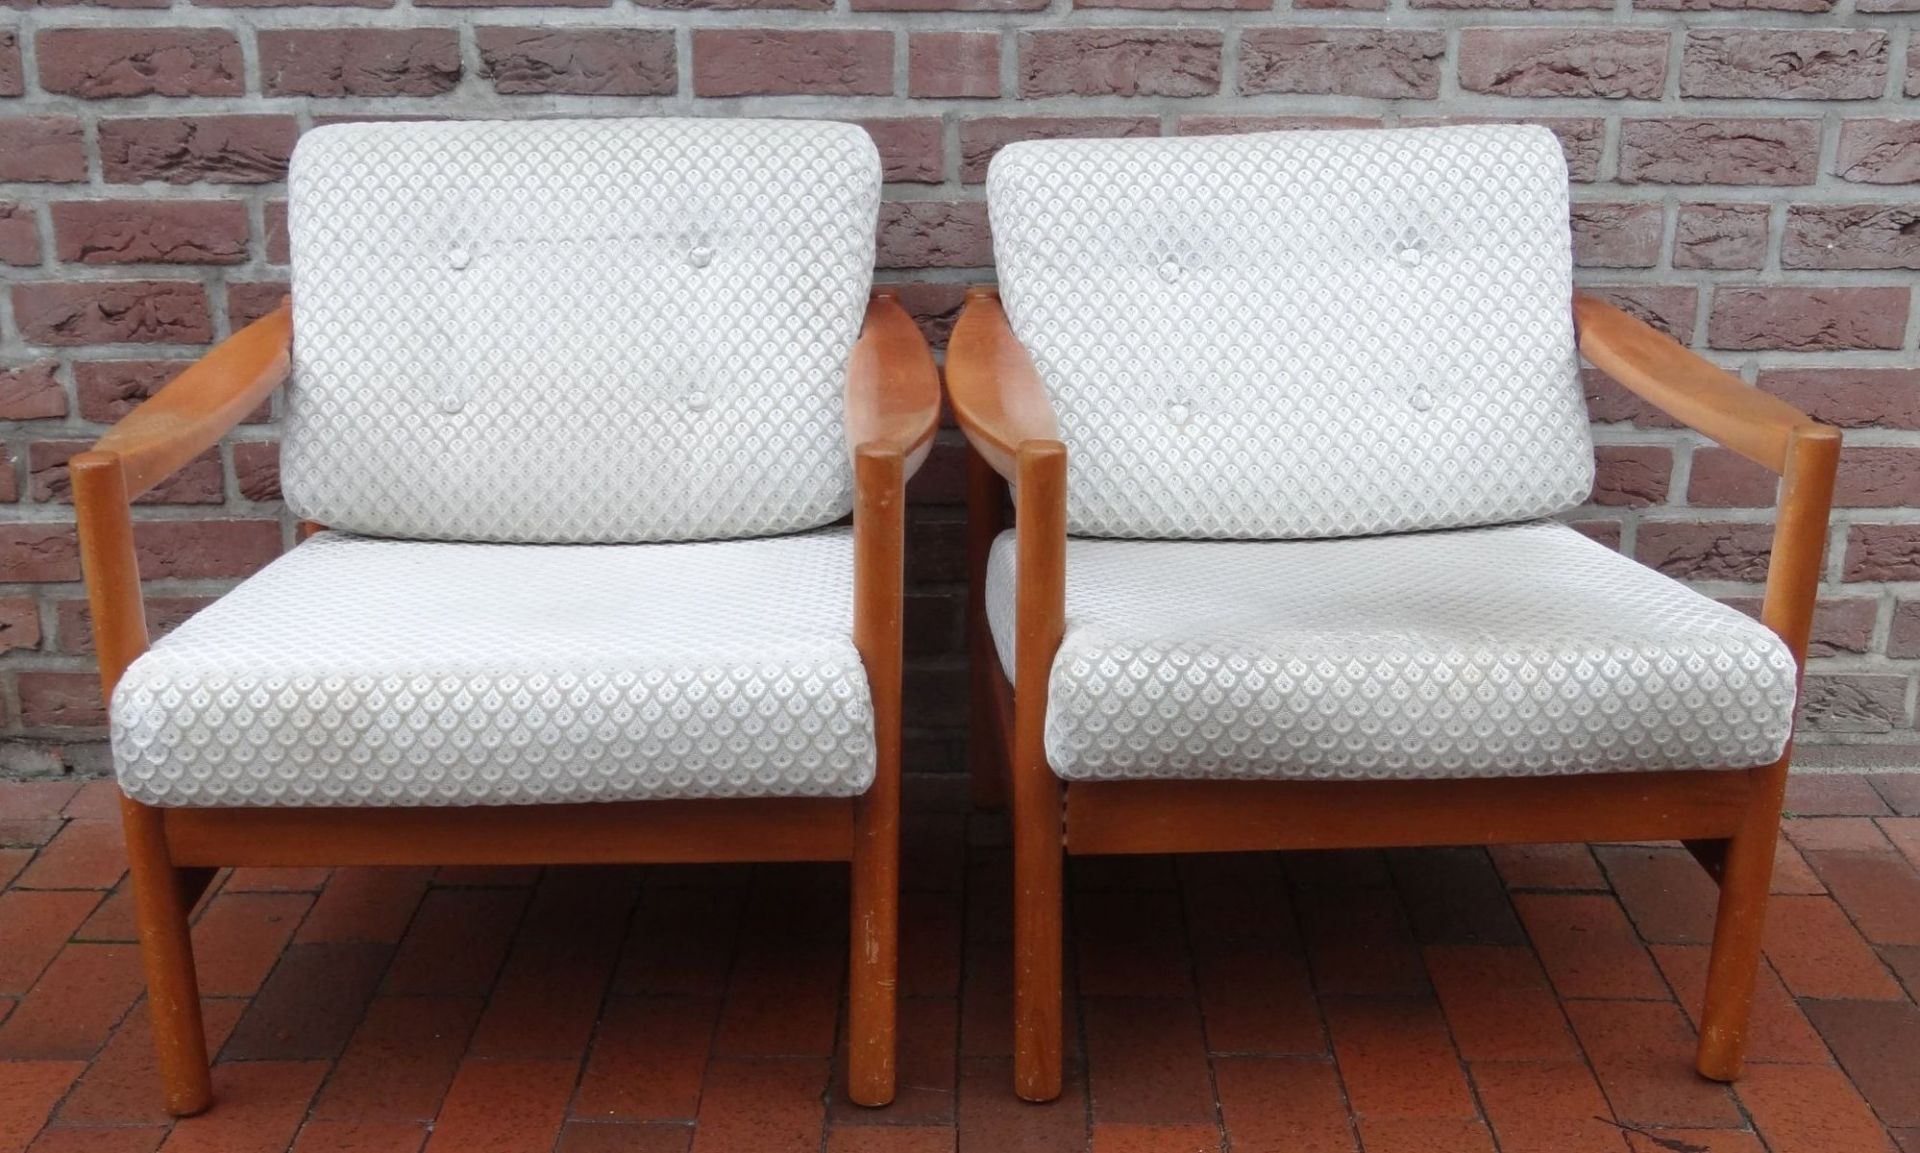 2 Armlehnstühle, Teakholz, 60-er Jahre Design, Dänemark?